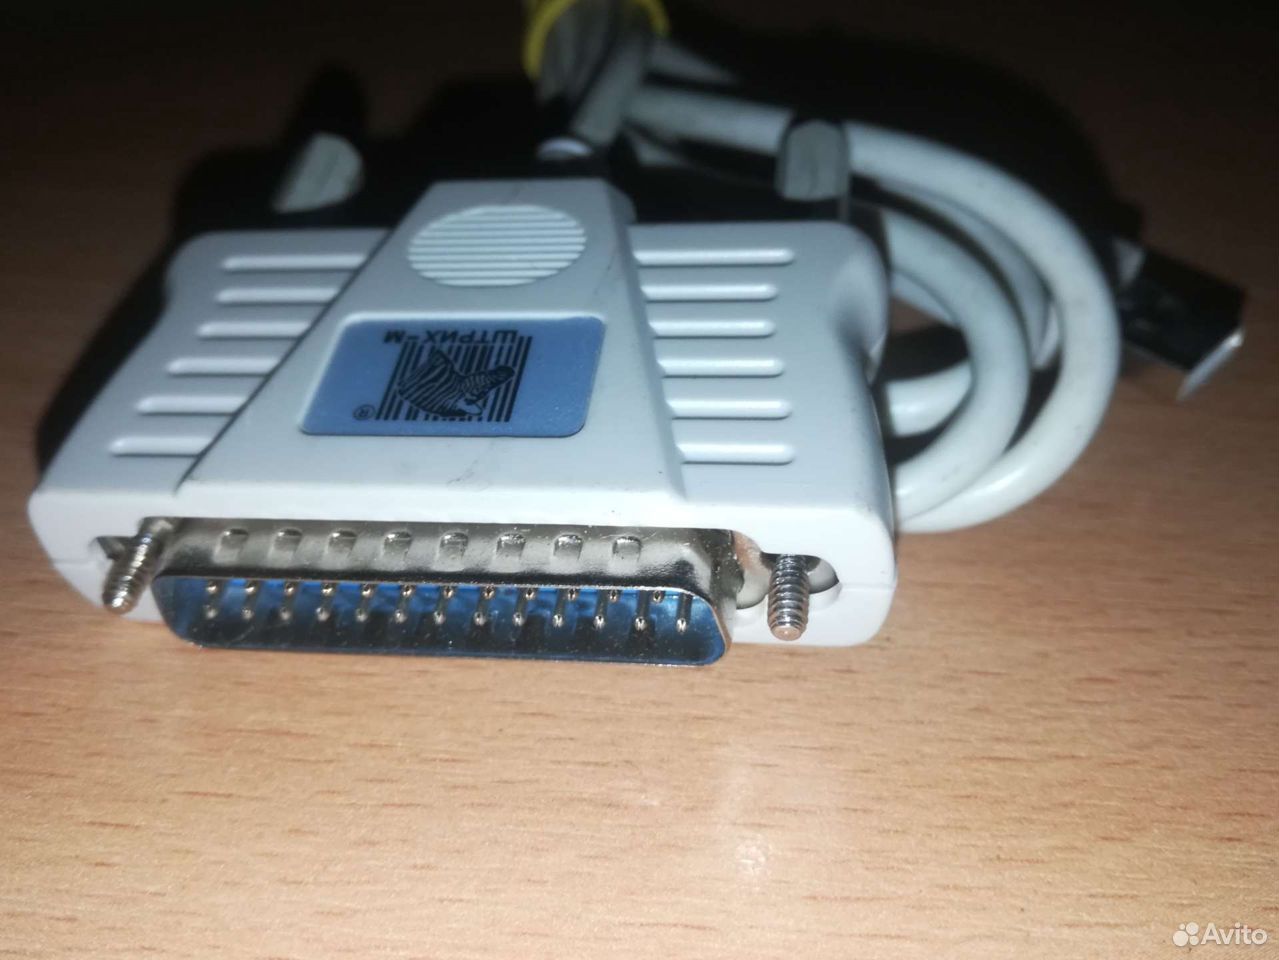 Кабель для компьютера Штрих-М USB 2.0 89611626315 купить 2